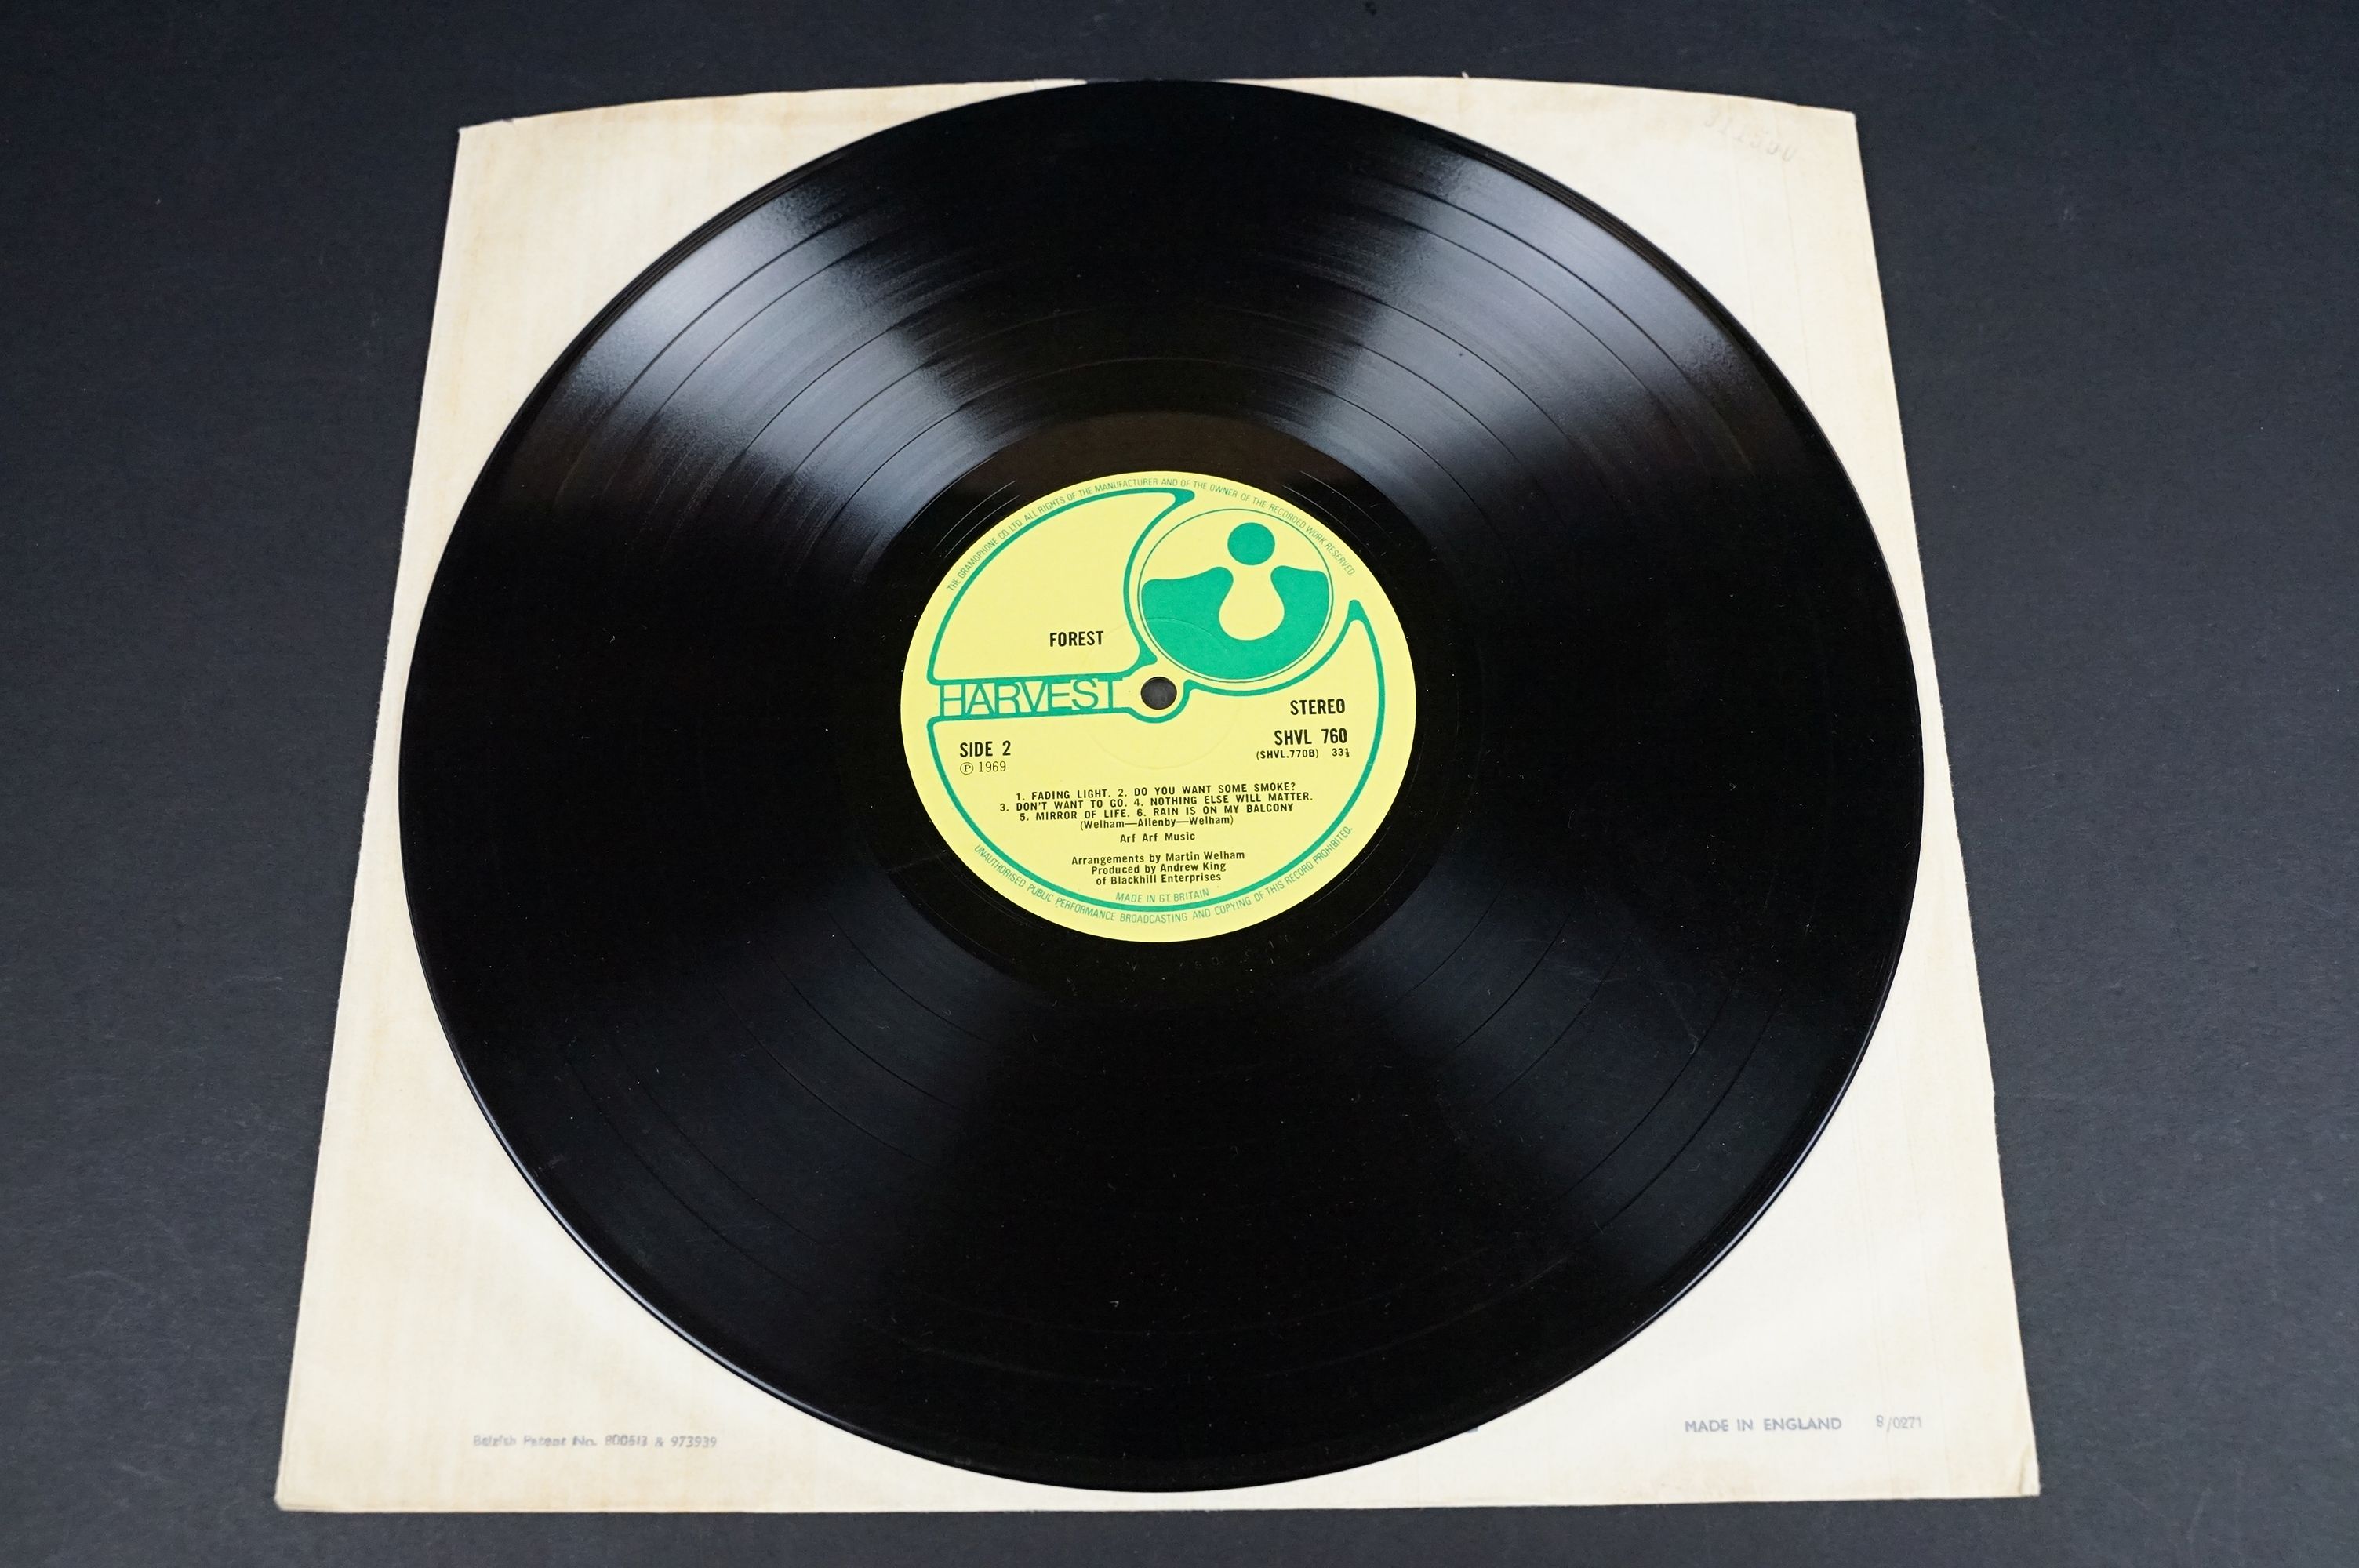 Vinyl - Forest self titled LP on Harvest Records SHVL 760. Original UK 1st pressing, no EMI on - Image 6 of 7